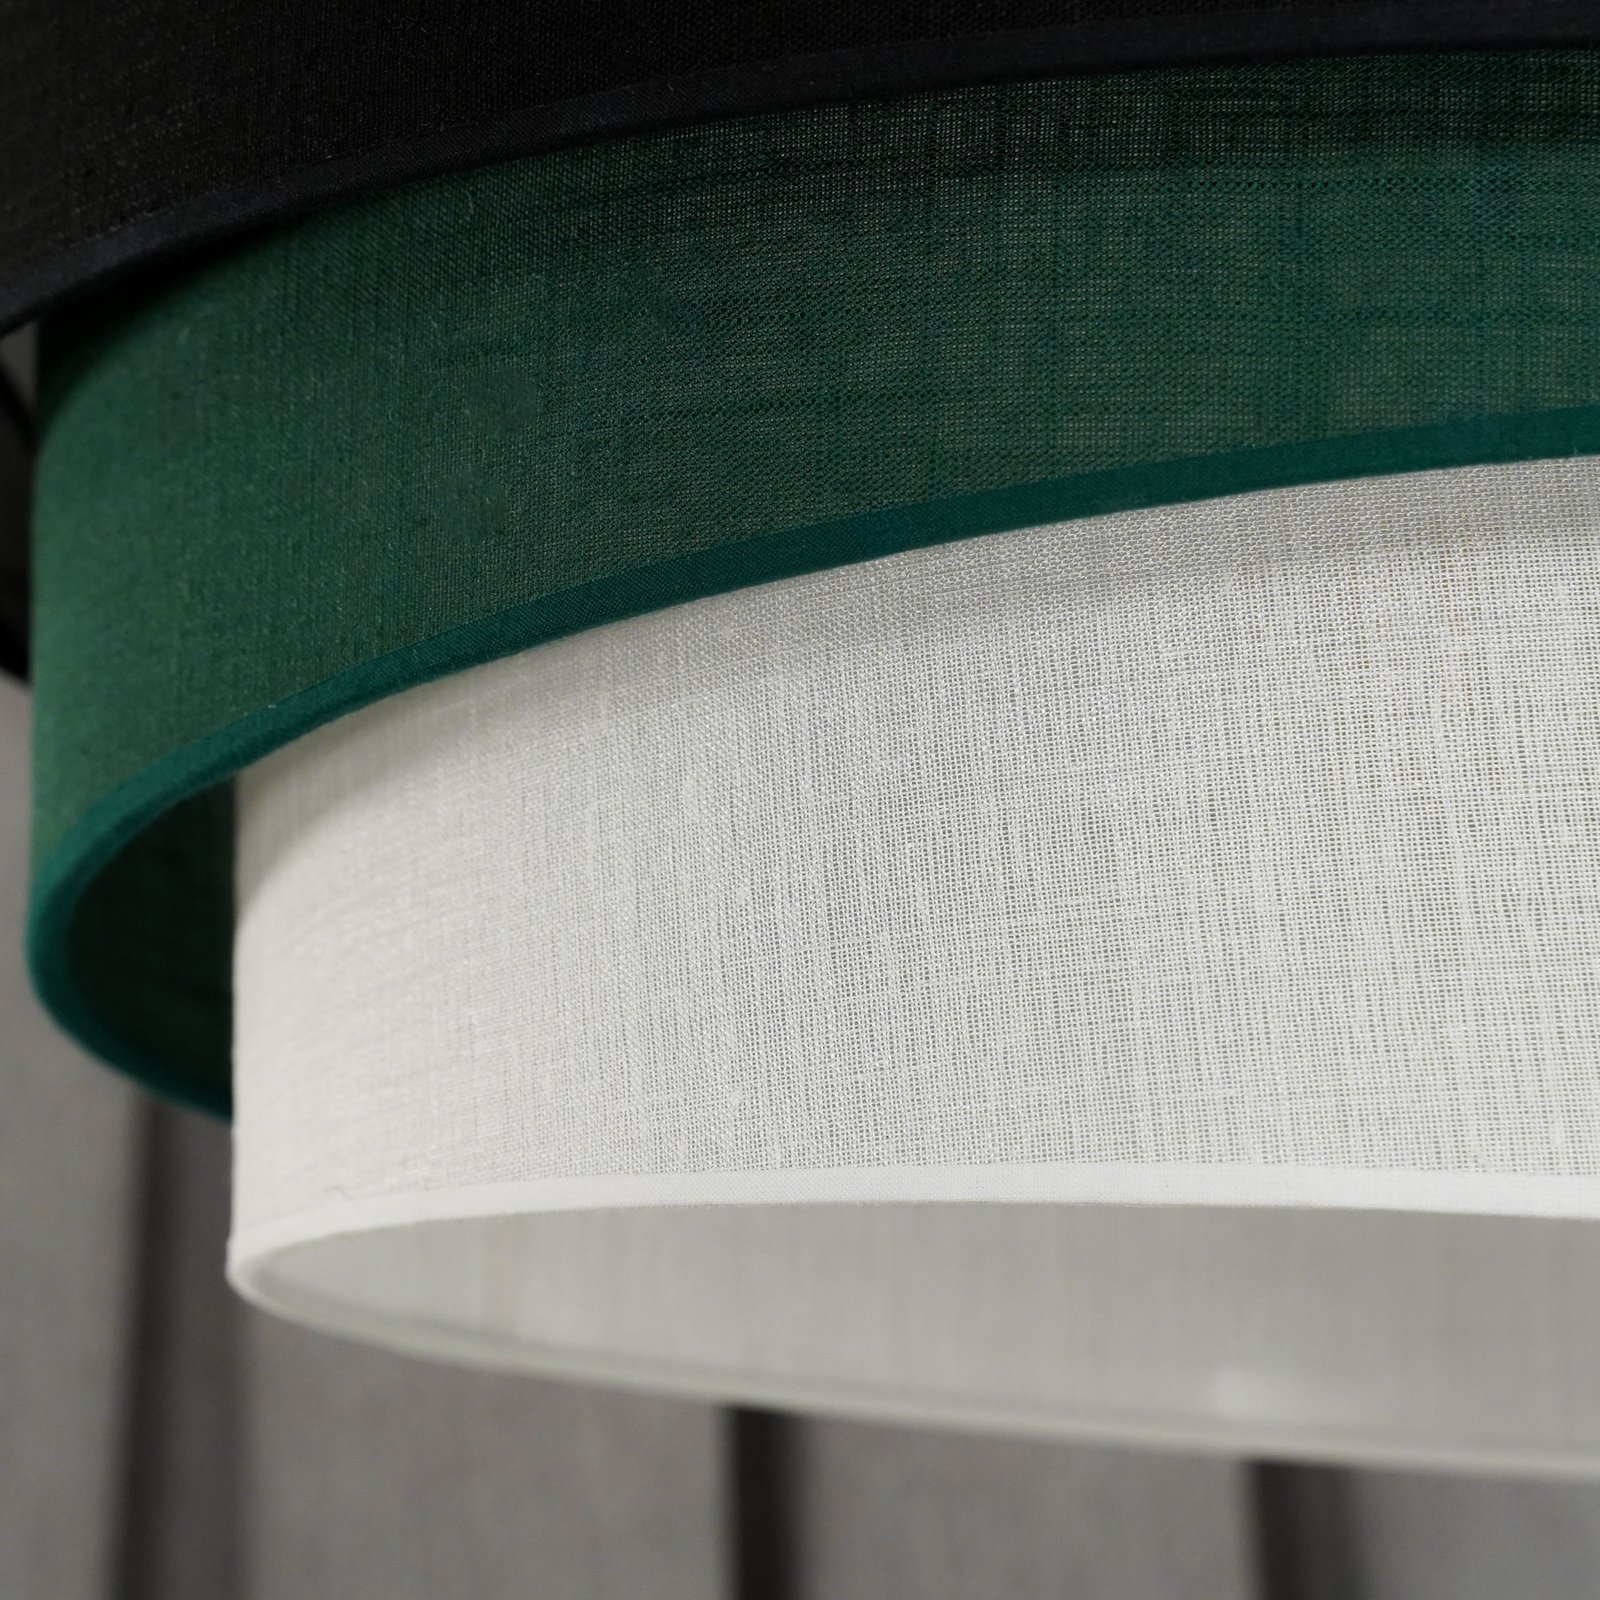 Лампа за таван Euluna Trio, черно/зелено/бяло, текстил, Ø 45 cm